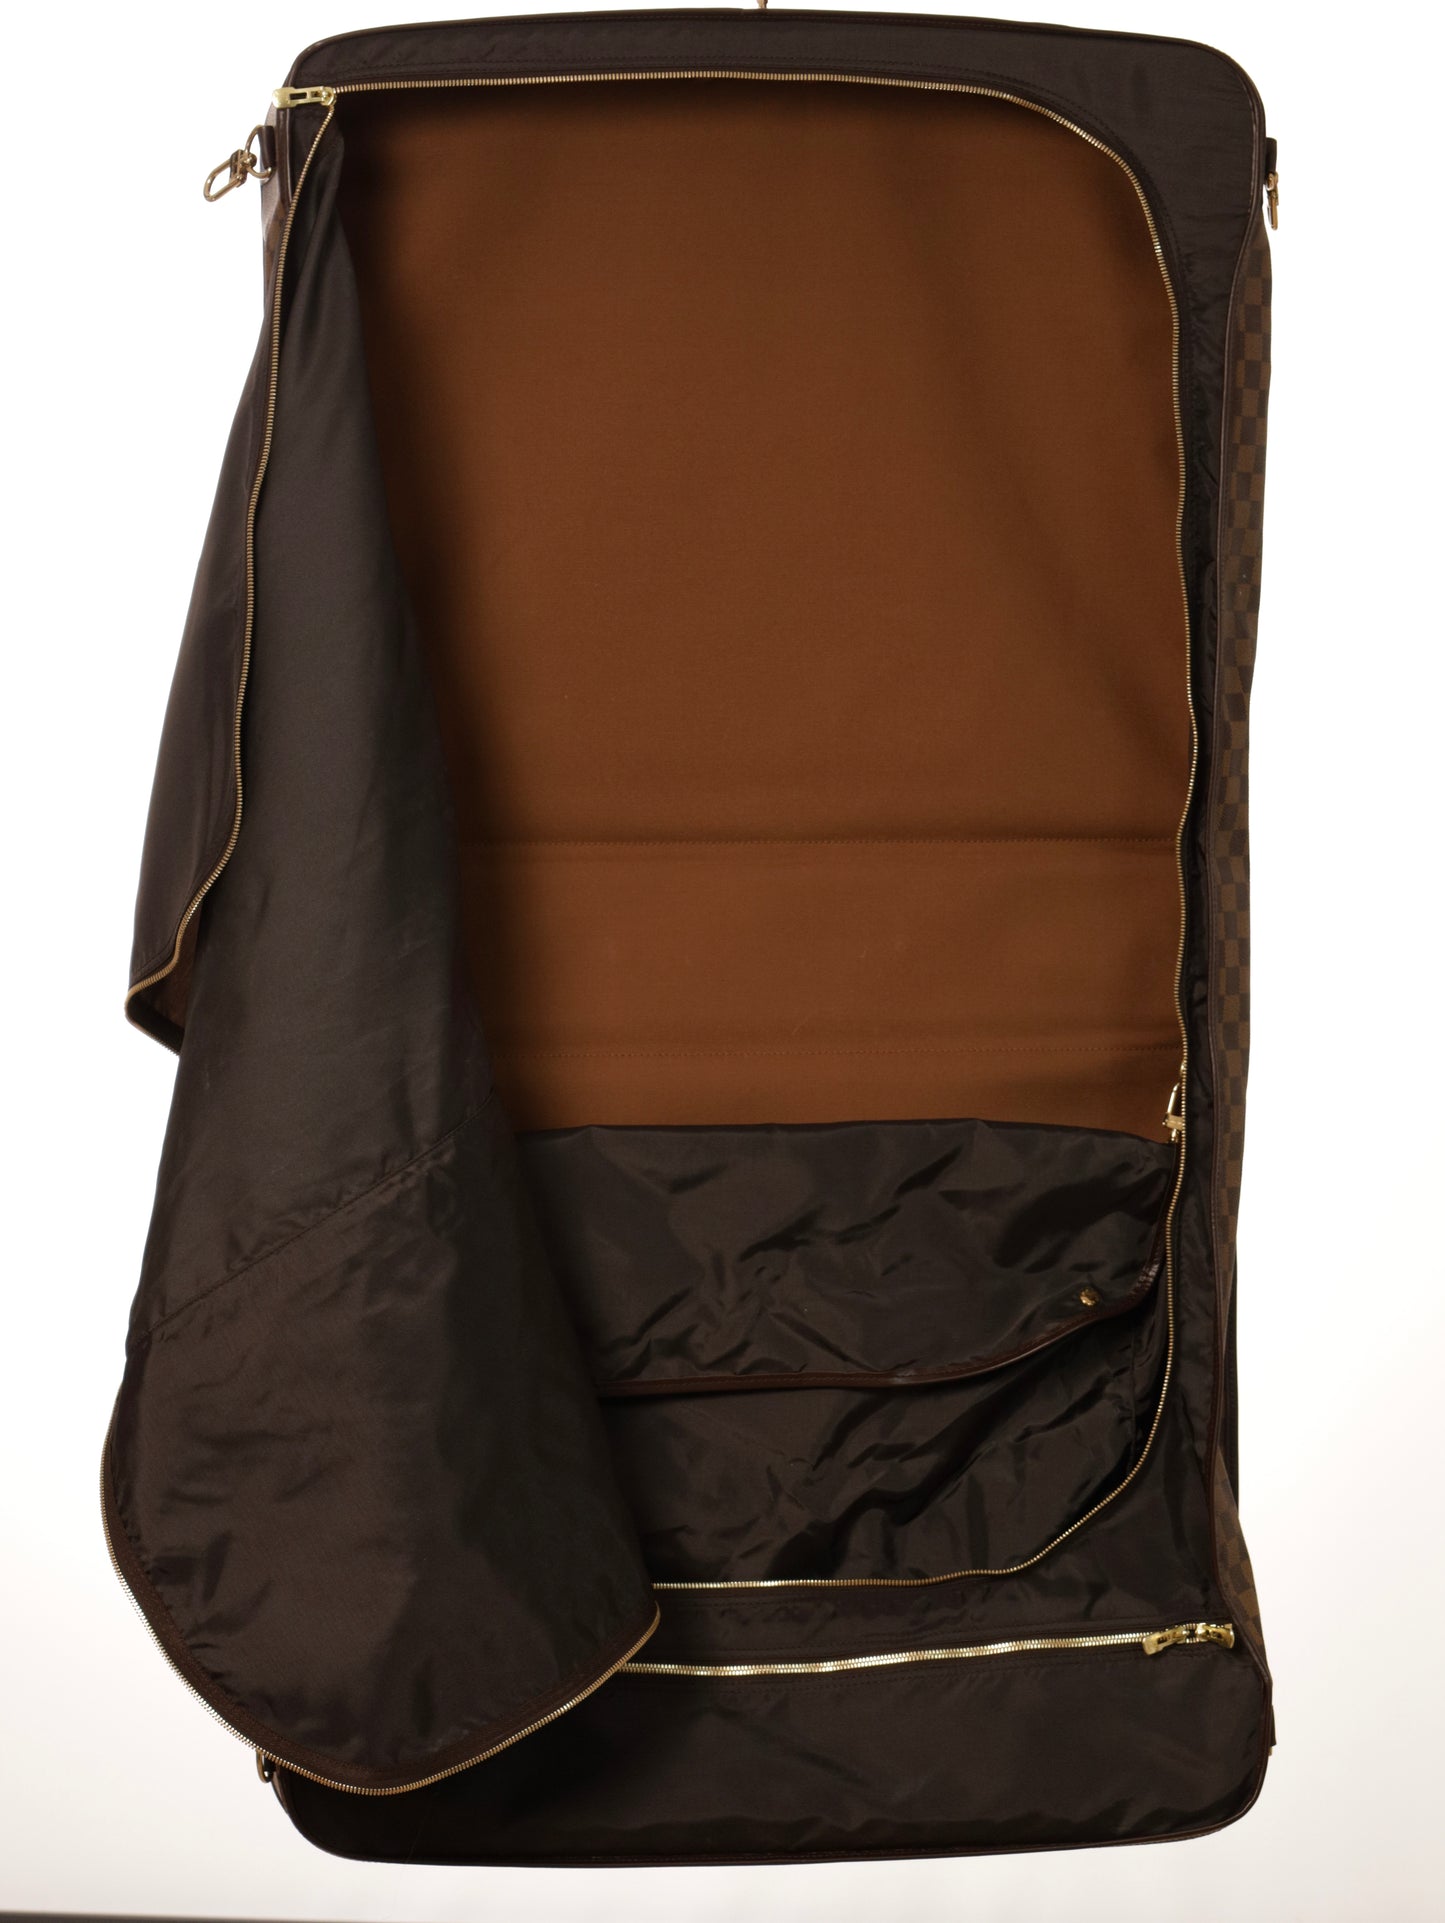 LOUIS VUITTON Garment Clothes Cover Large Model Garment Bag Suitcase